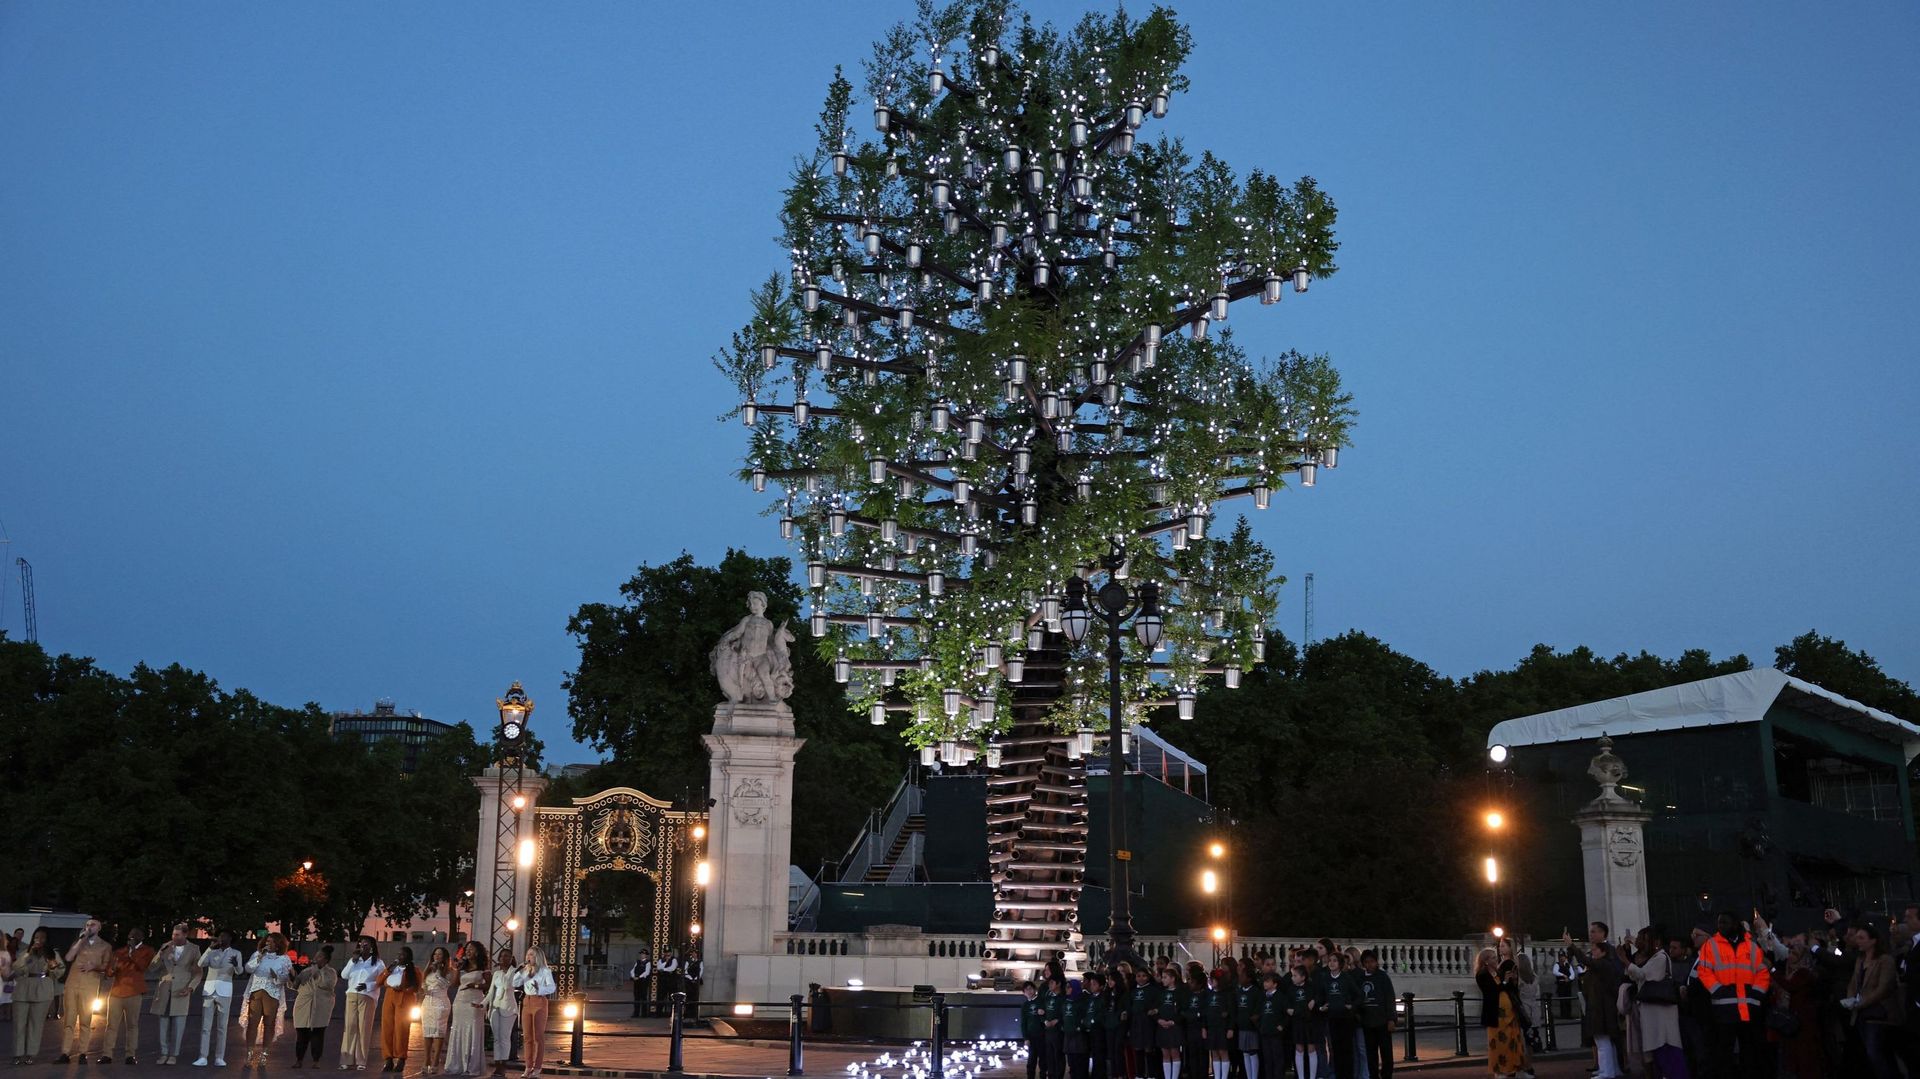 La sculpture intitulée "Tree of Trees" devant le palais de Buckingham est la principale attraction lumineuse de la nuit. Composée de 350 arbres ayant poussé au Royaume-Uni, la sculpture est censée rappeler que les arbres sont les "super-héros" des villes,